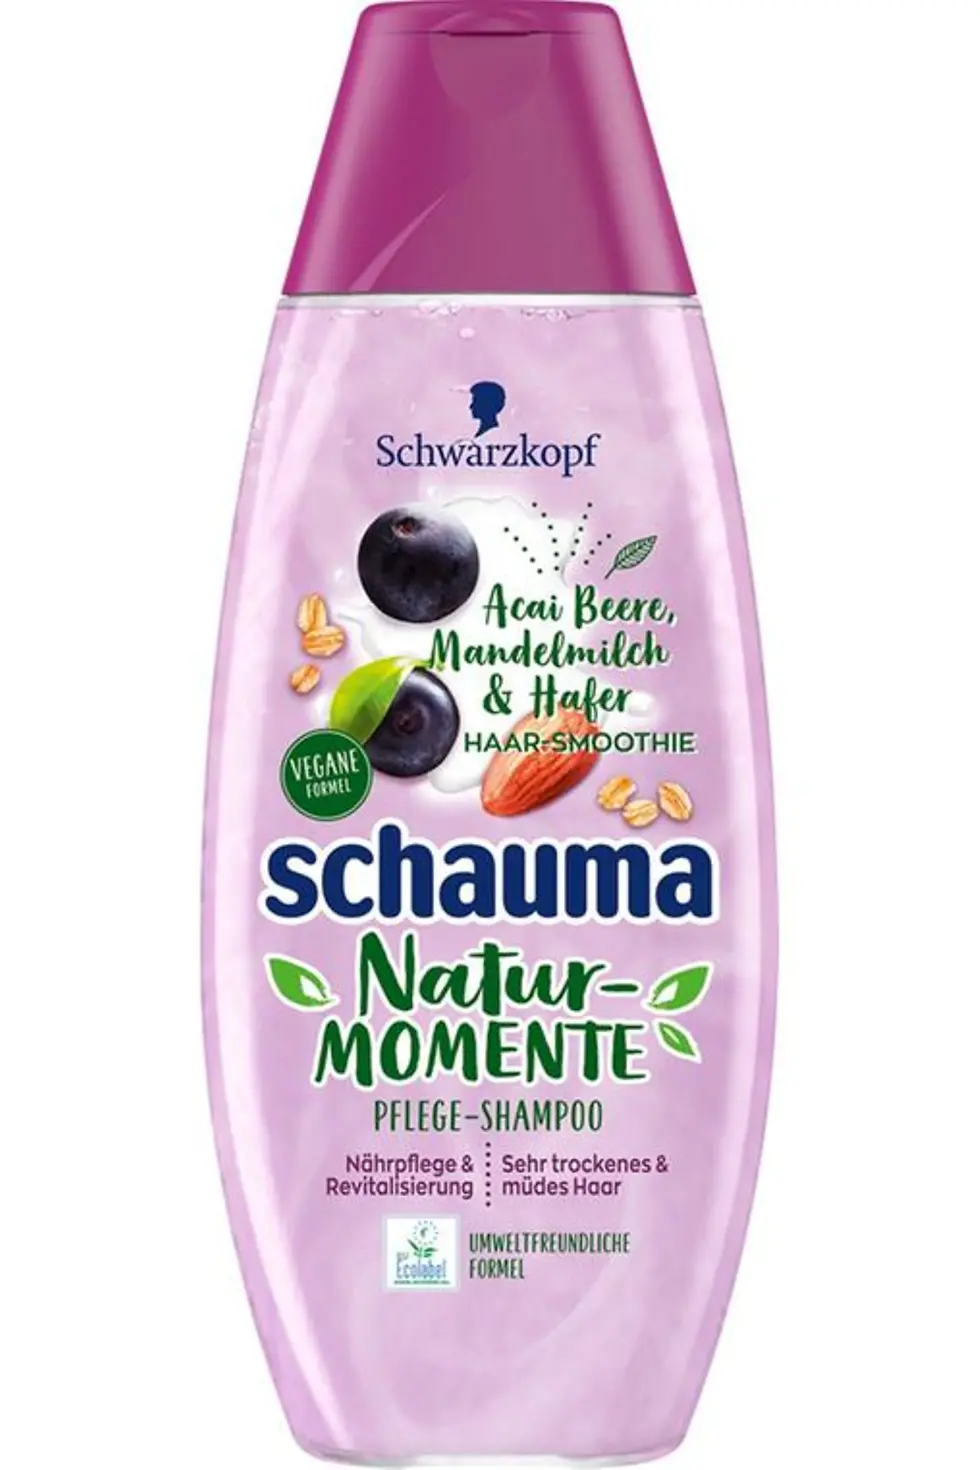 Schauma Natur-Momente Haar-Smoothie Acai Beere, Mandelmilch & Hafer Shampoo